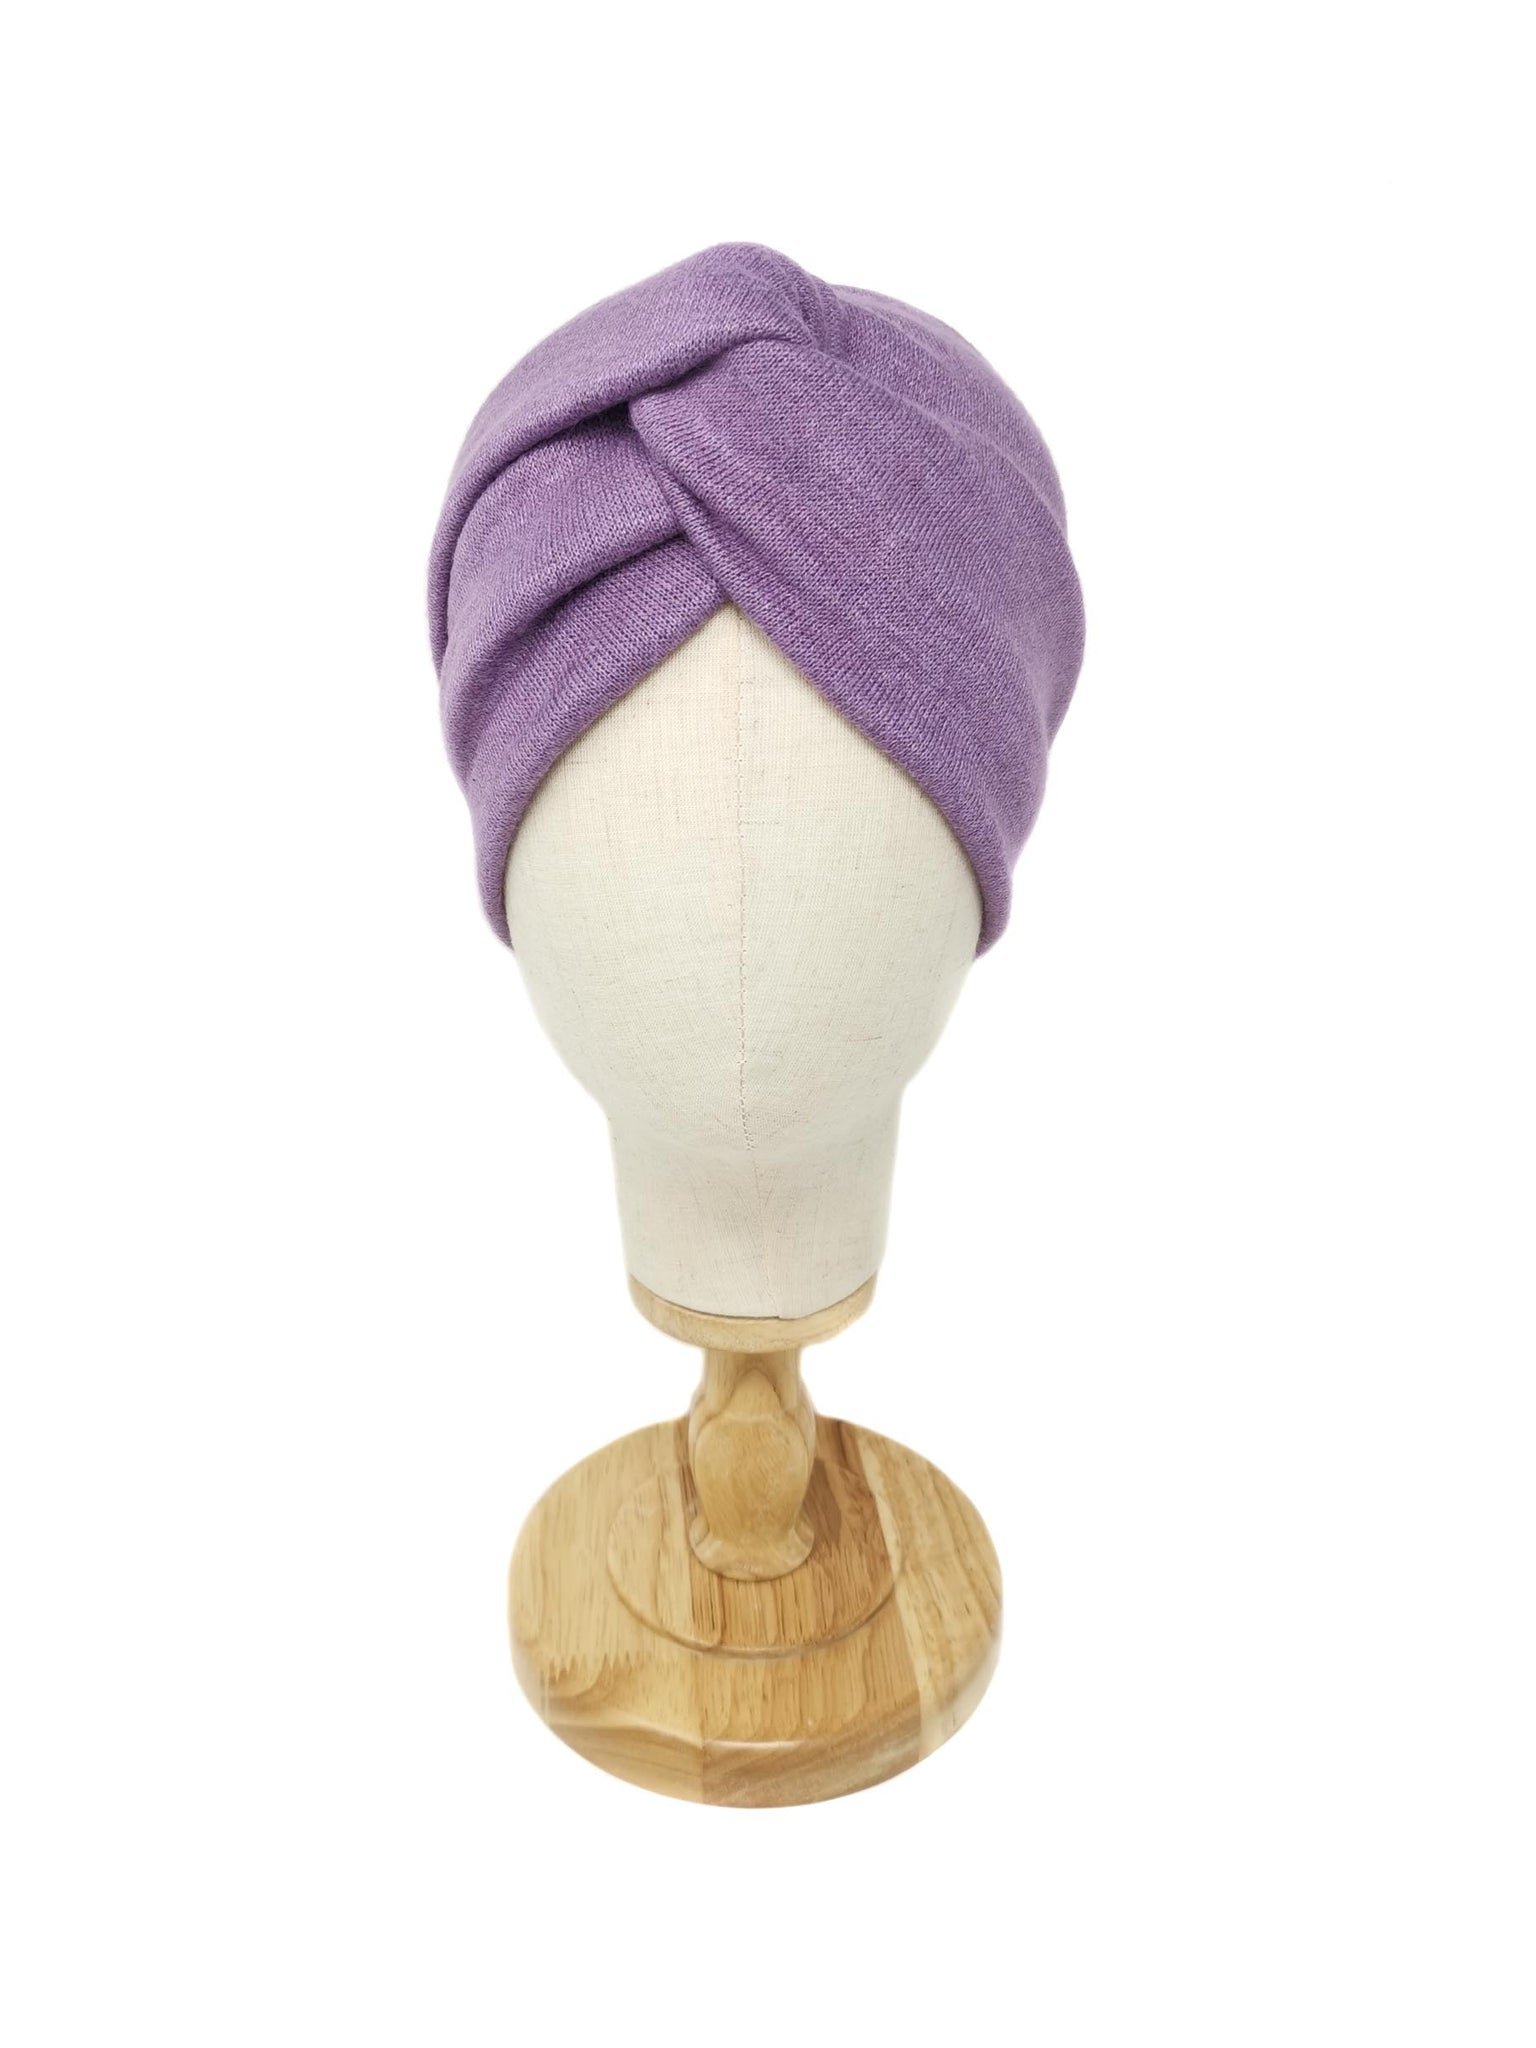 Lilac wool headband